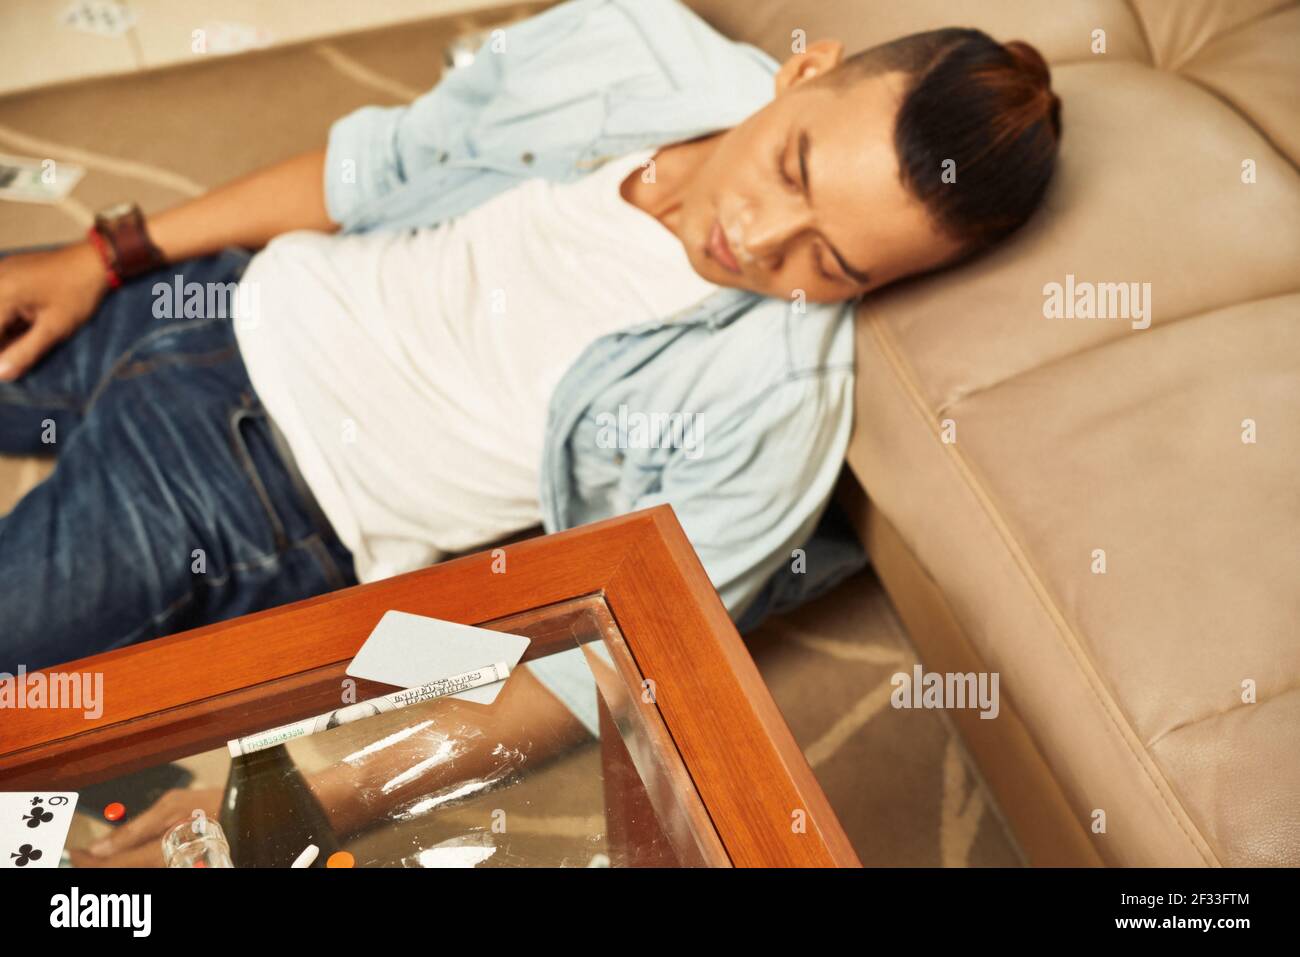 Le drogué s'est endormi sur le sol après avoir consommé de la cocaïne à la maison Banque D'Images